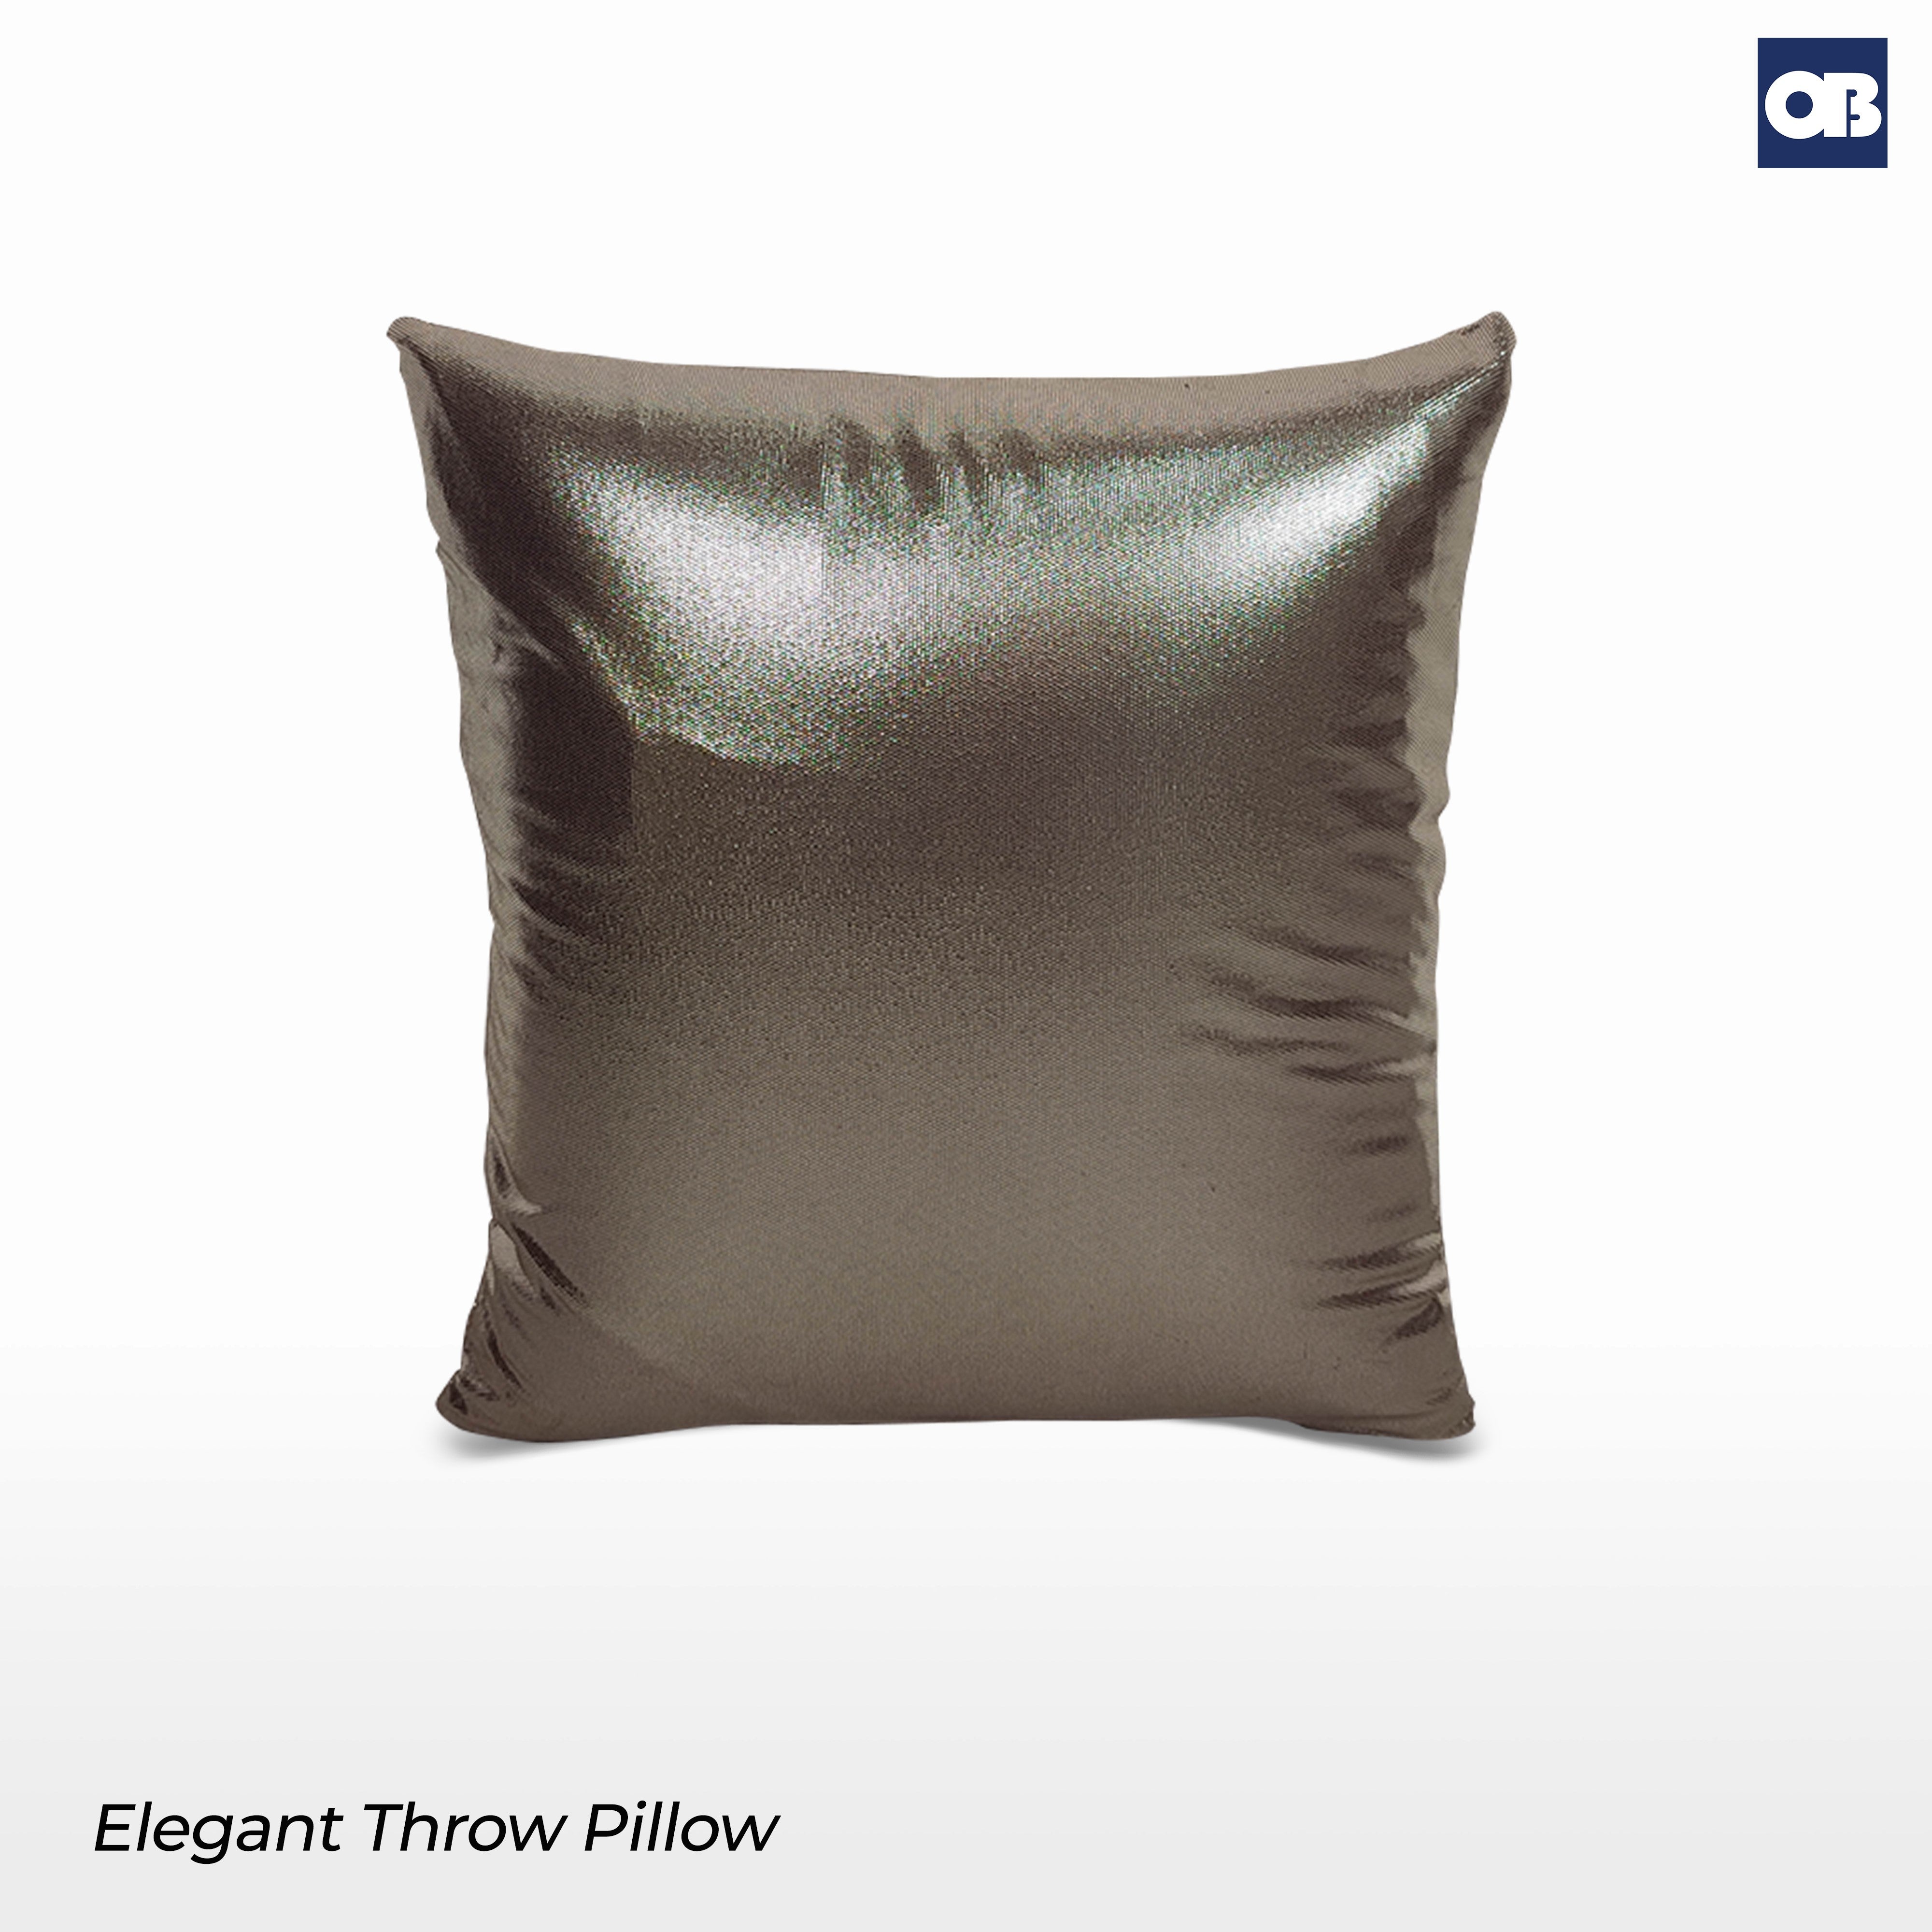 OB Elegant Throw Pillow